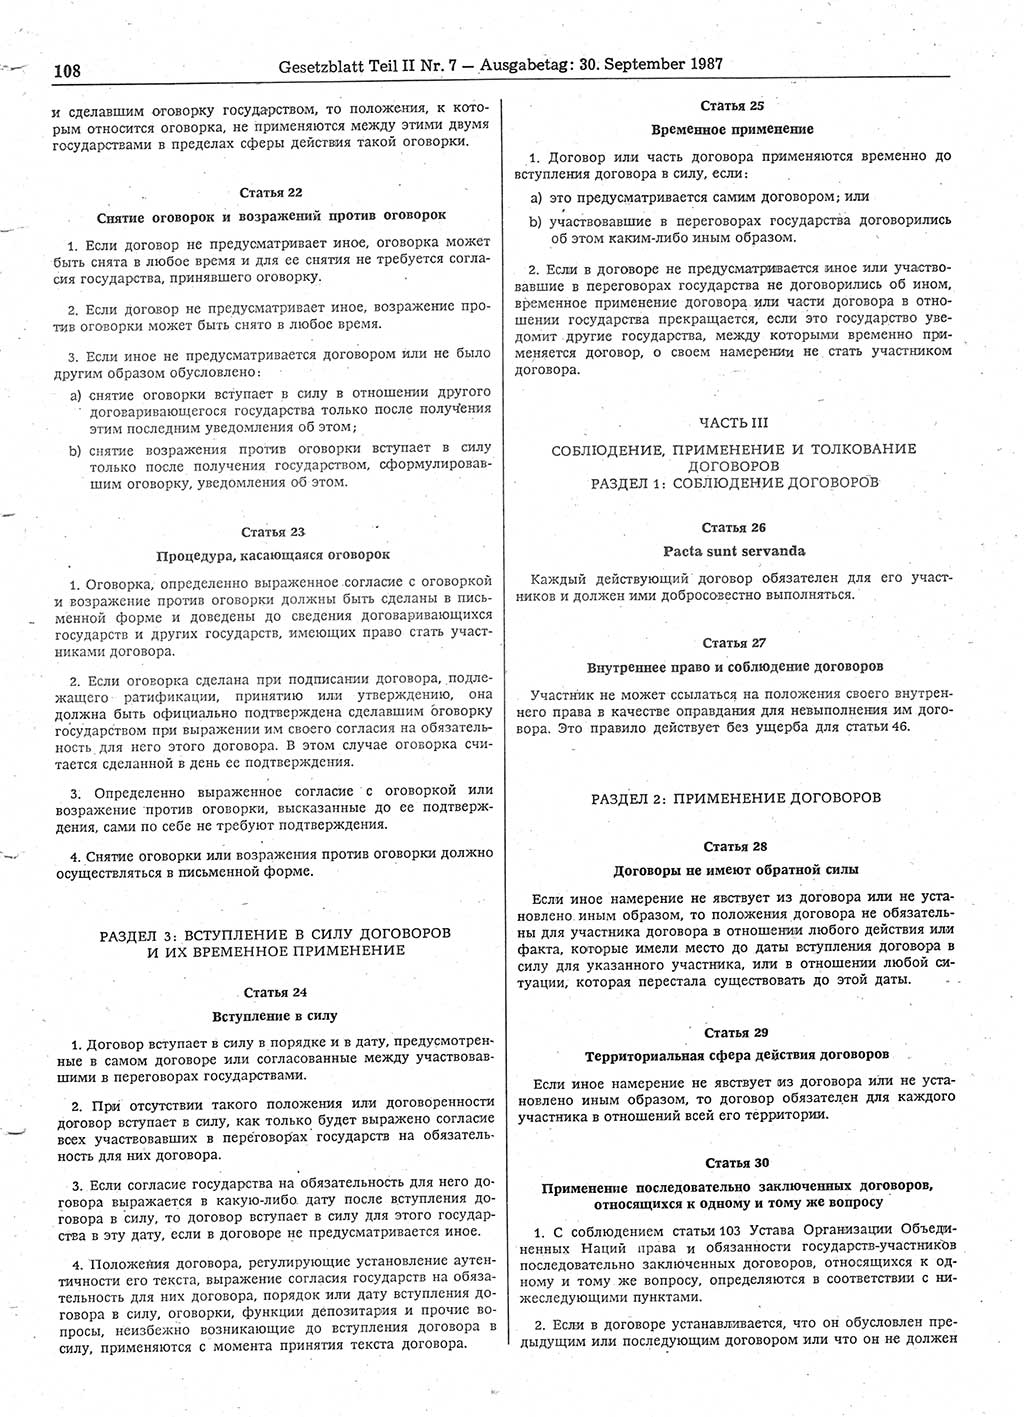 Gesetzblatt (GBl.) der Deutschen Demokratischen Republik (DDR) Teil ⅠⅠ 1987, Seite 108 (GBl. DDR ⅠⅠ 1987, S. 108)